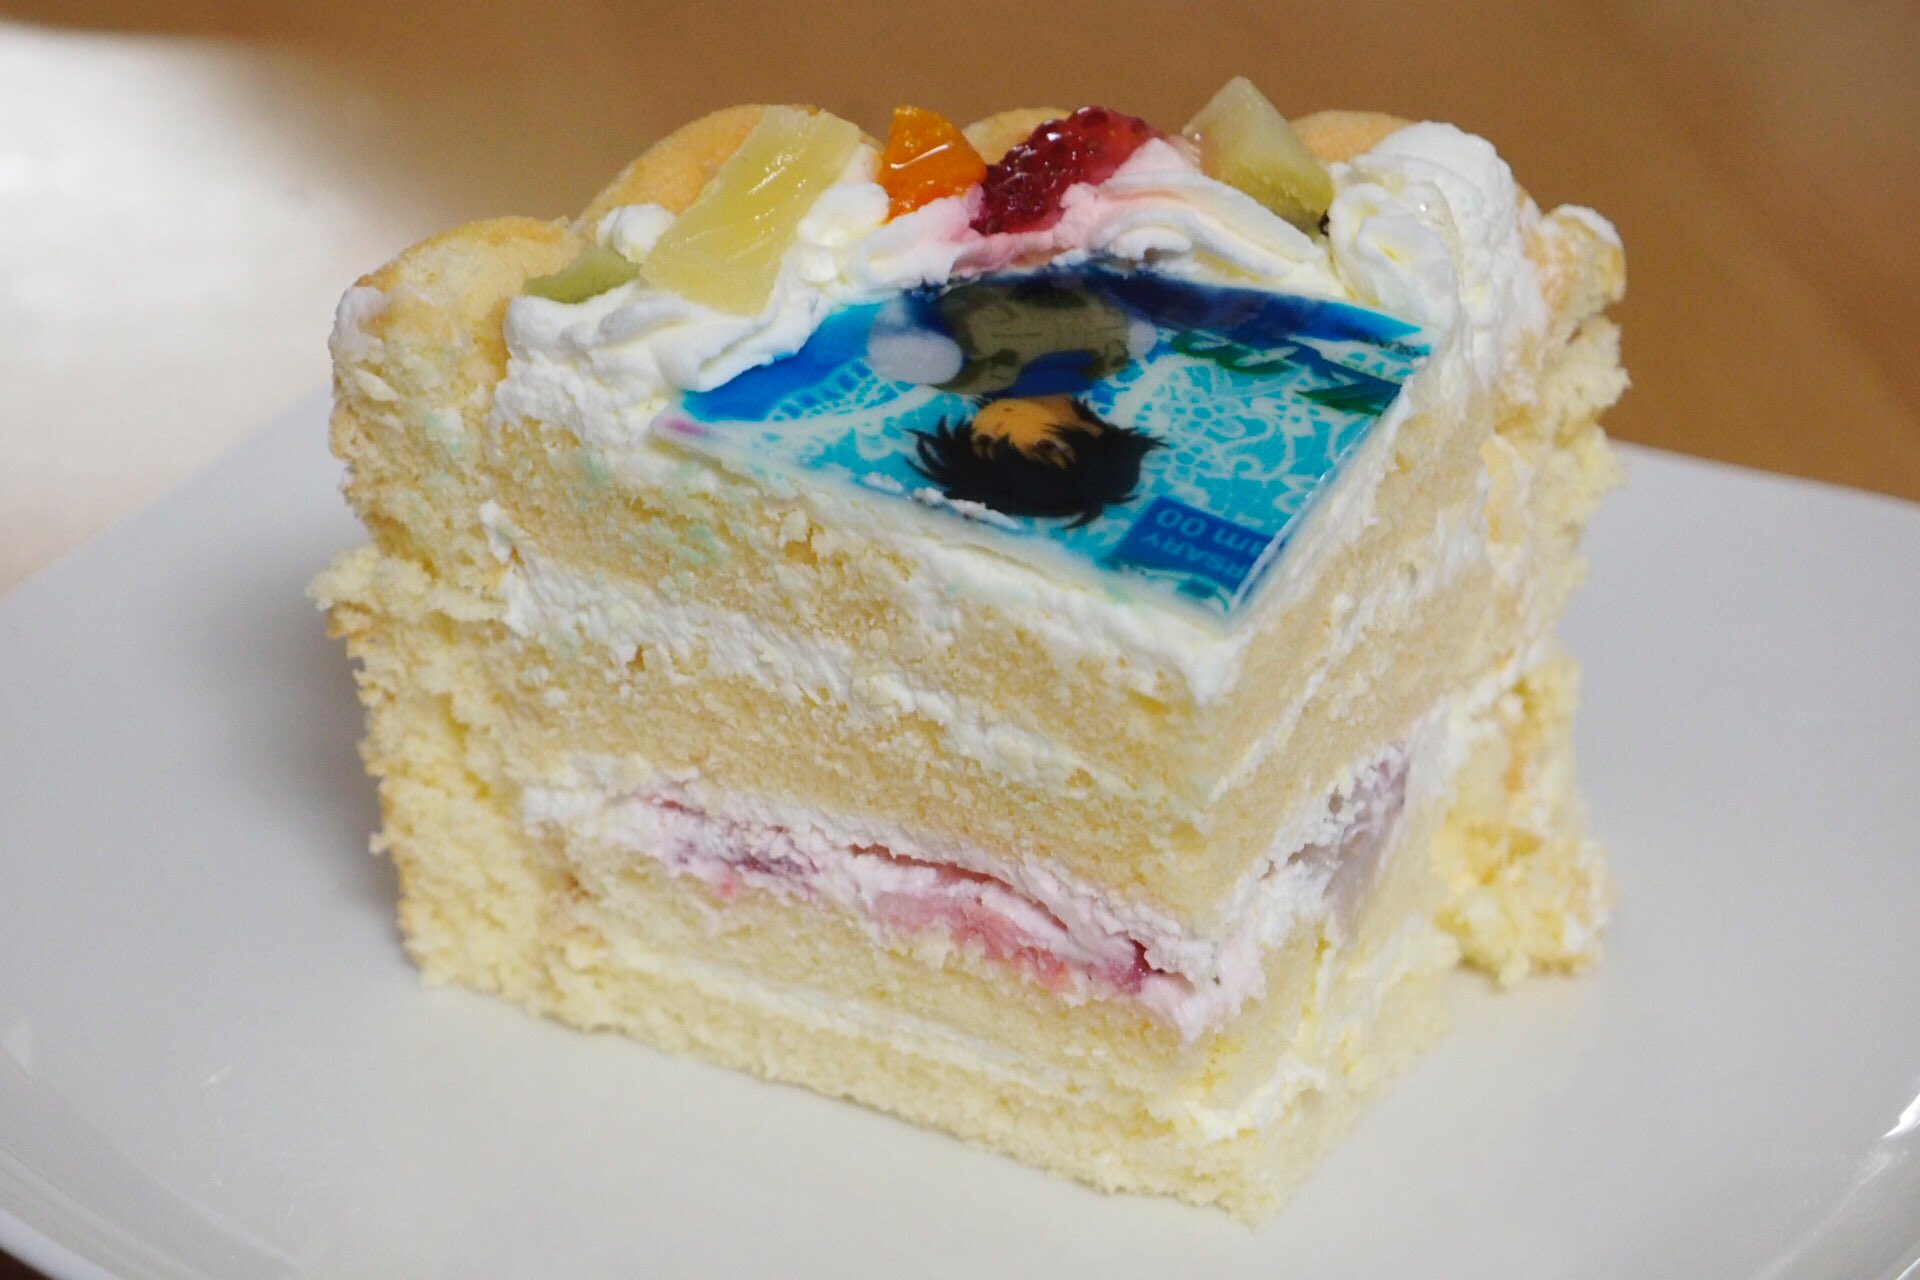 よっくん 機動戦士ガンダム00 10th Anniversary ケーキセット 断面はこのようになっています フルーツ は下段のみ スポンジはややしっとりしていて食べやすく 全体として甘さはほどほどに イラストがプリントされている白い板はチョコではなく